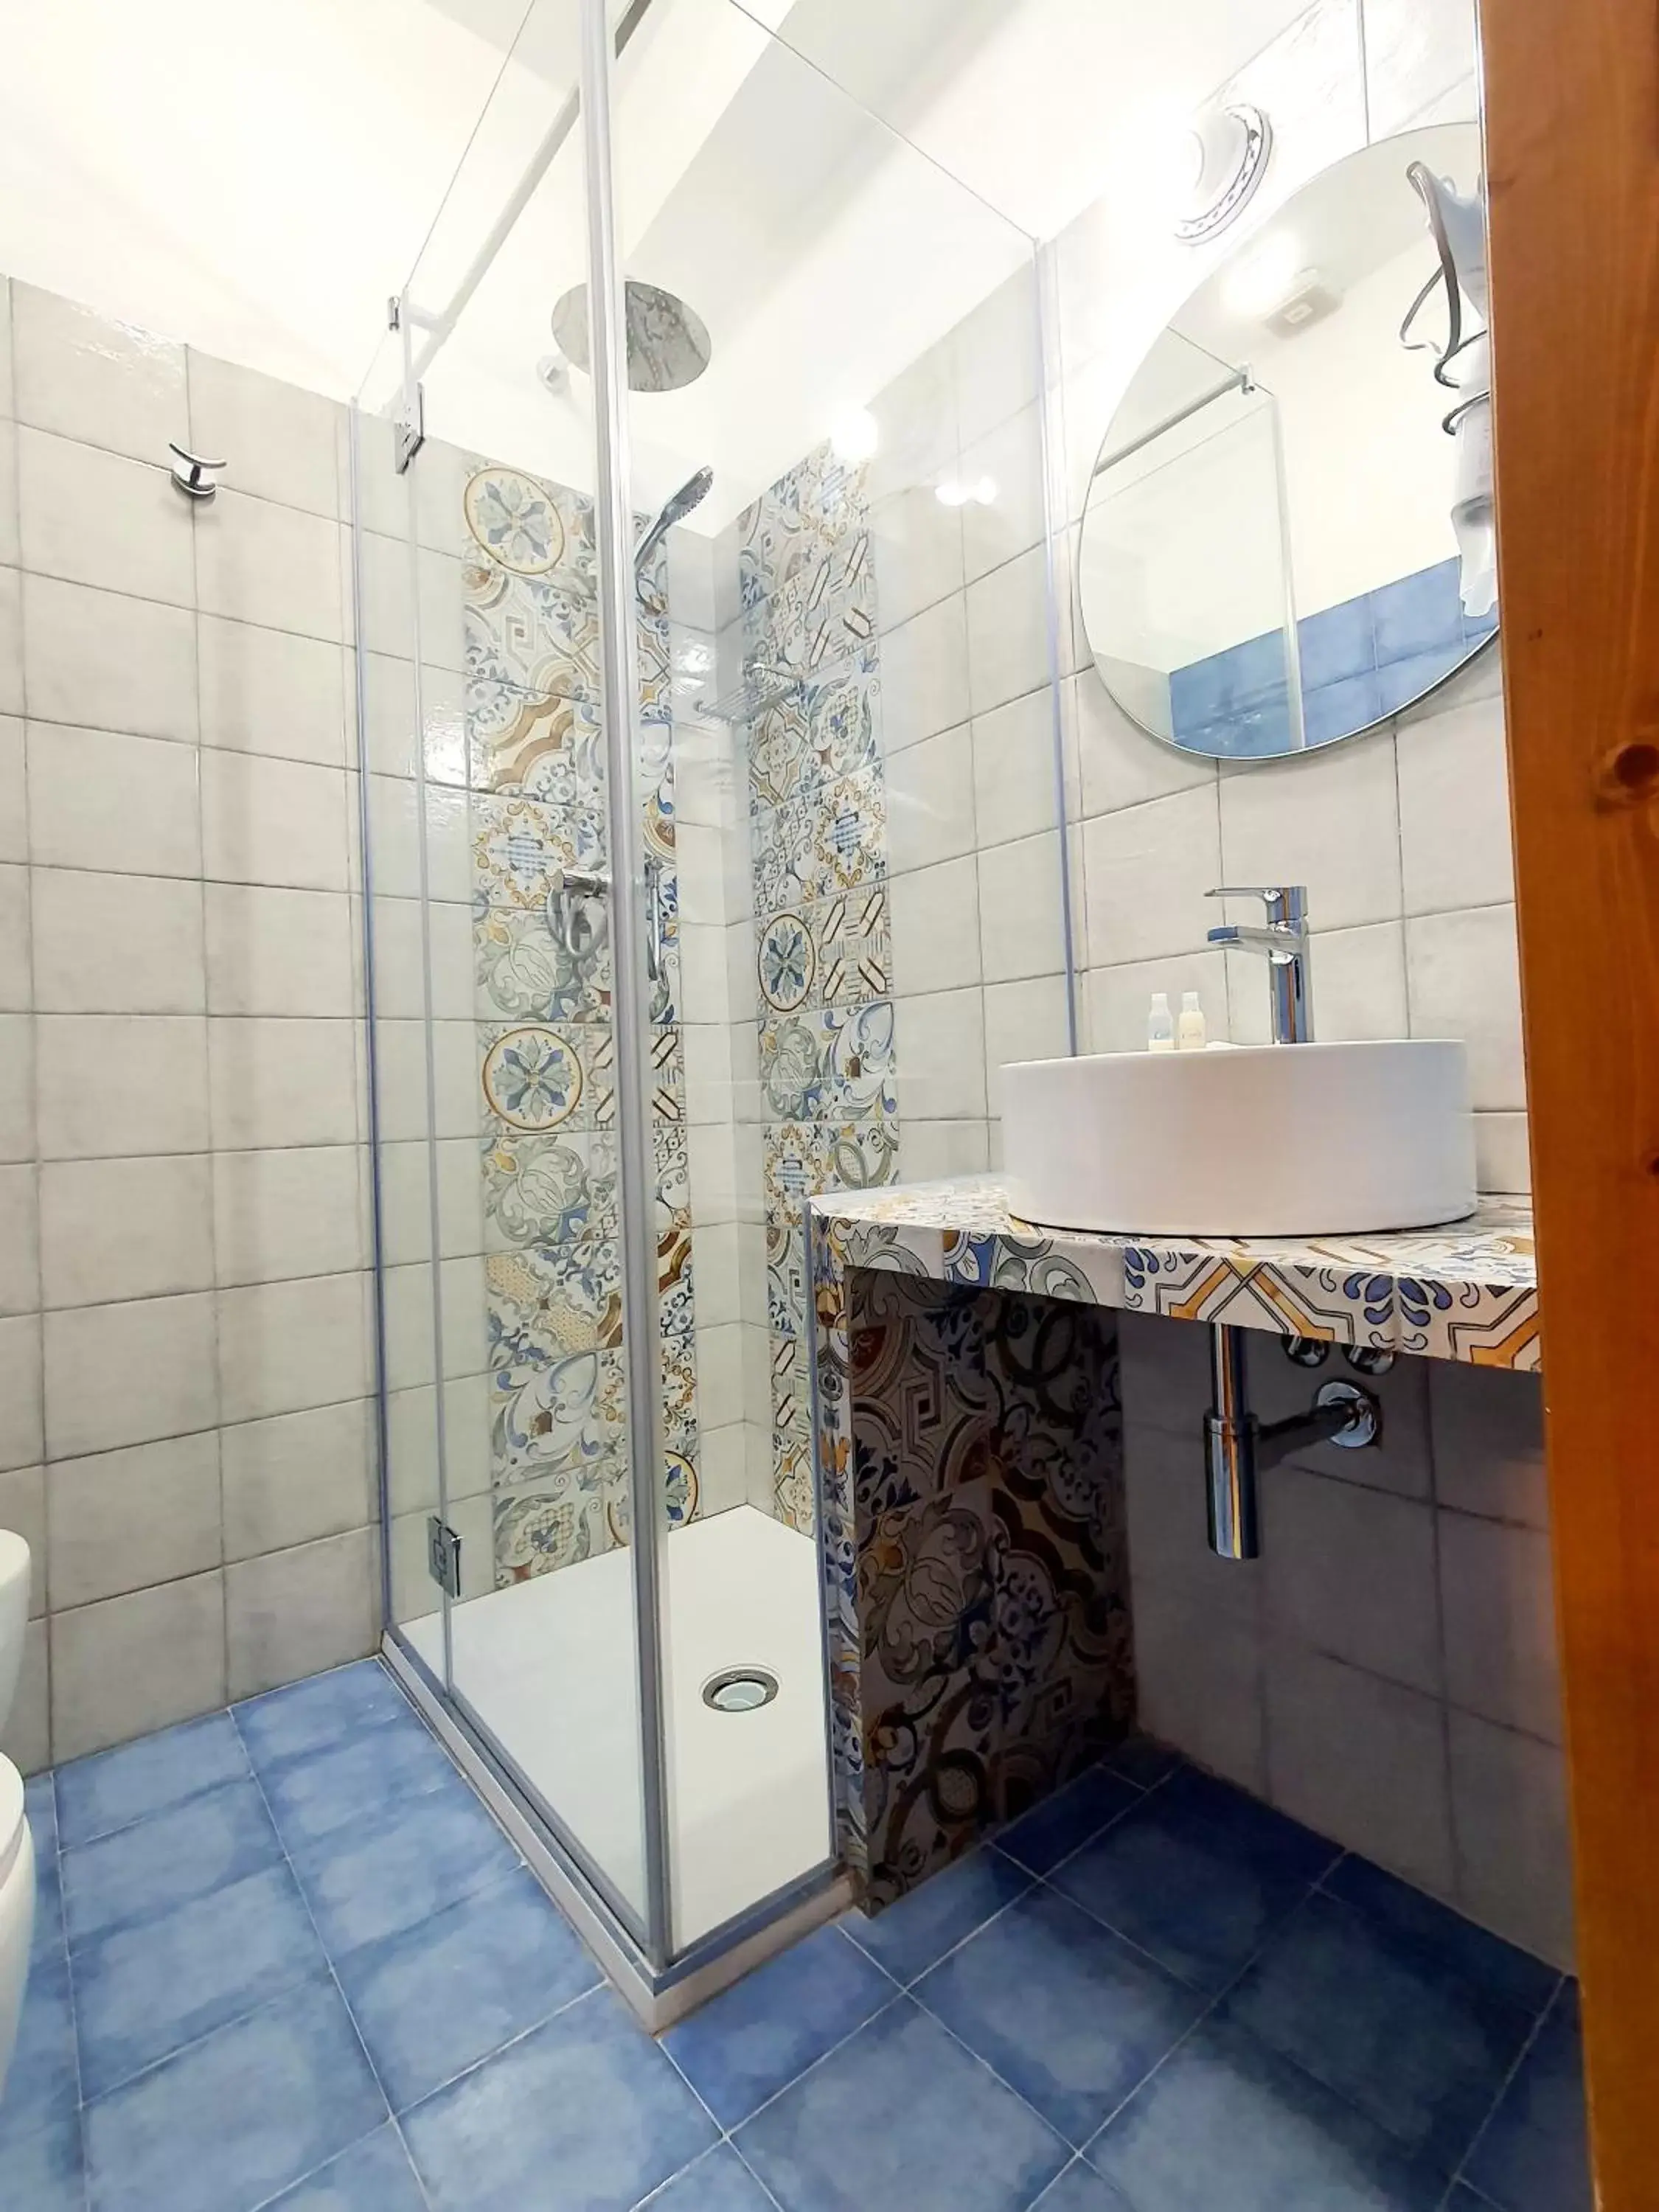 Bathroom in Hotel Cala Marina